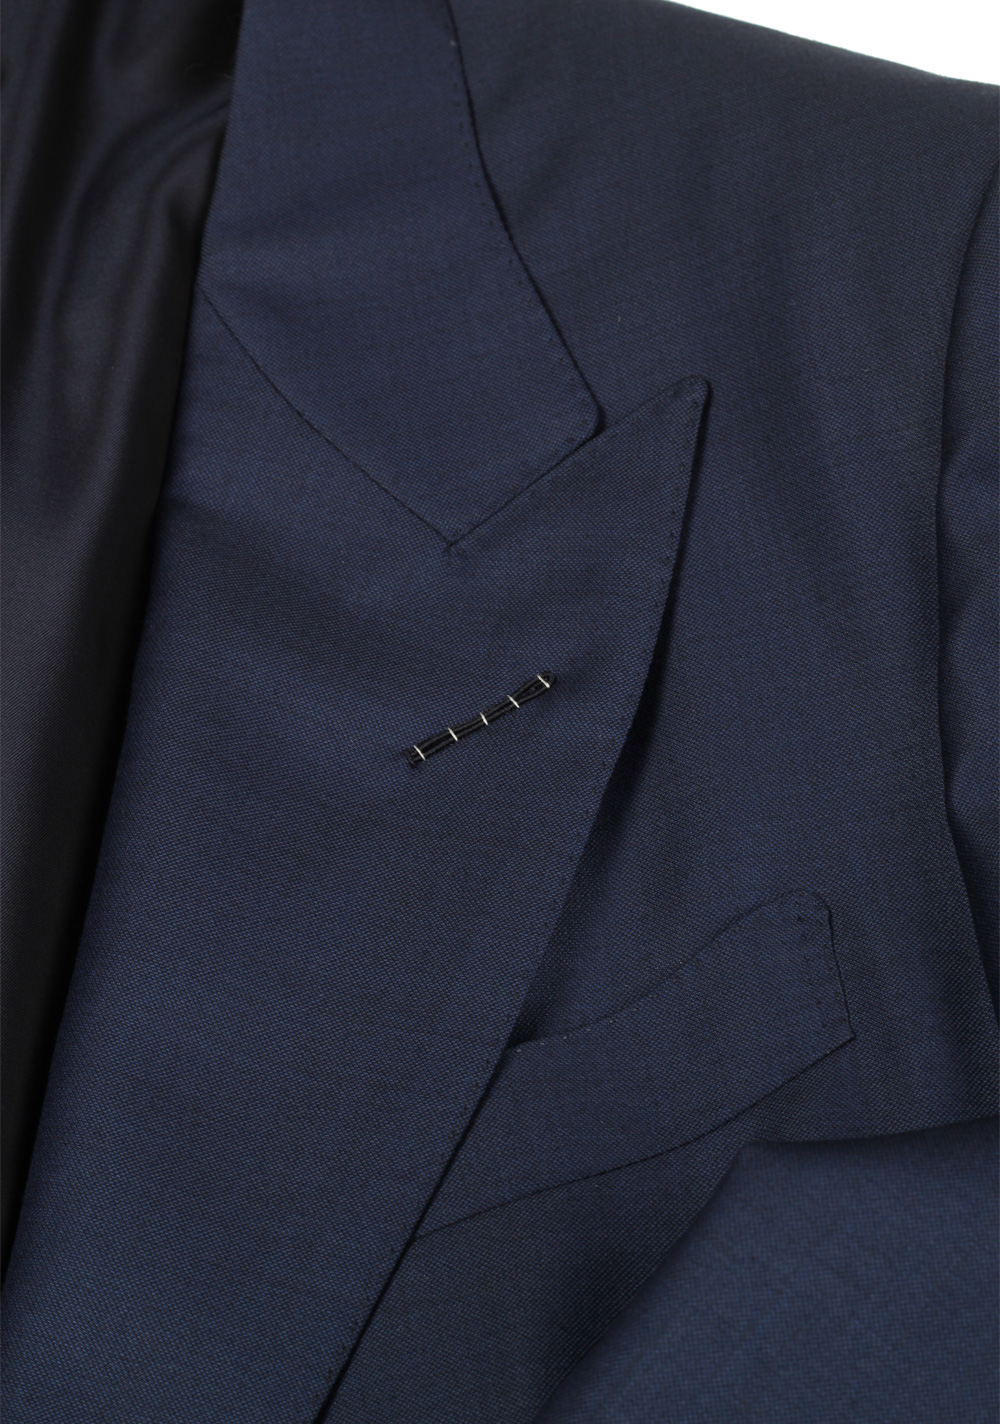 TOM FORD Shelton Blue Suit Size 54 / 44R U.S. Wool | Costume Limité